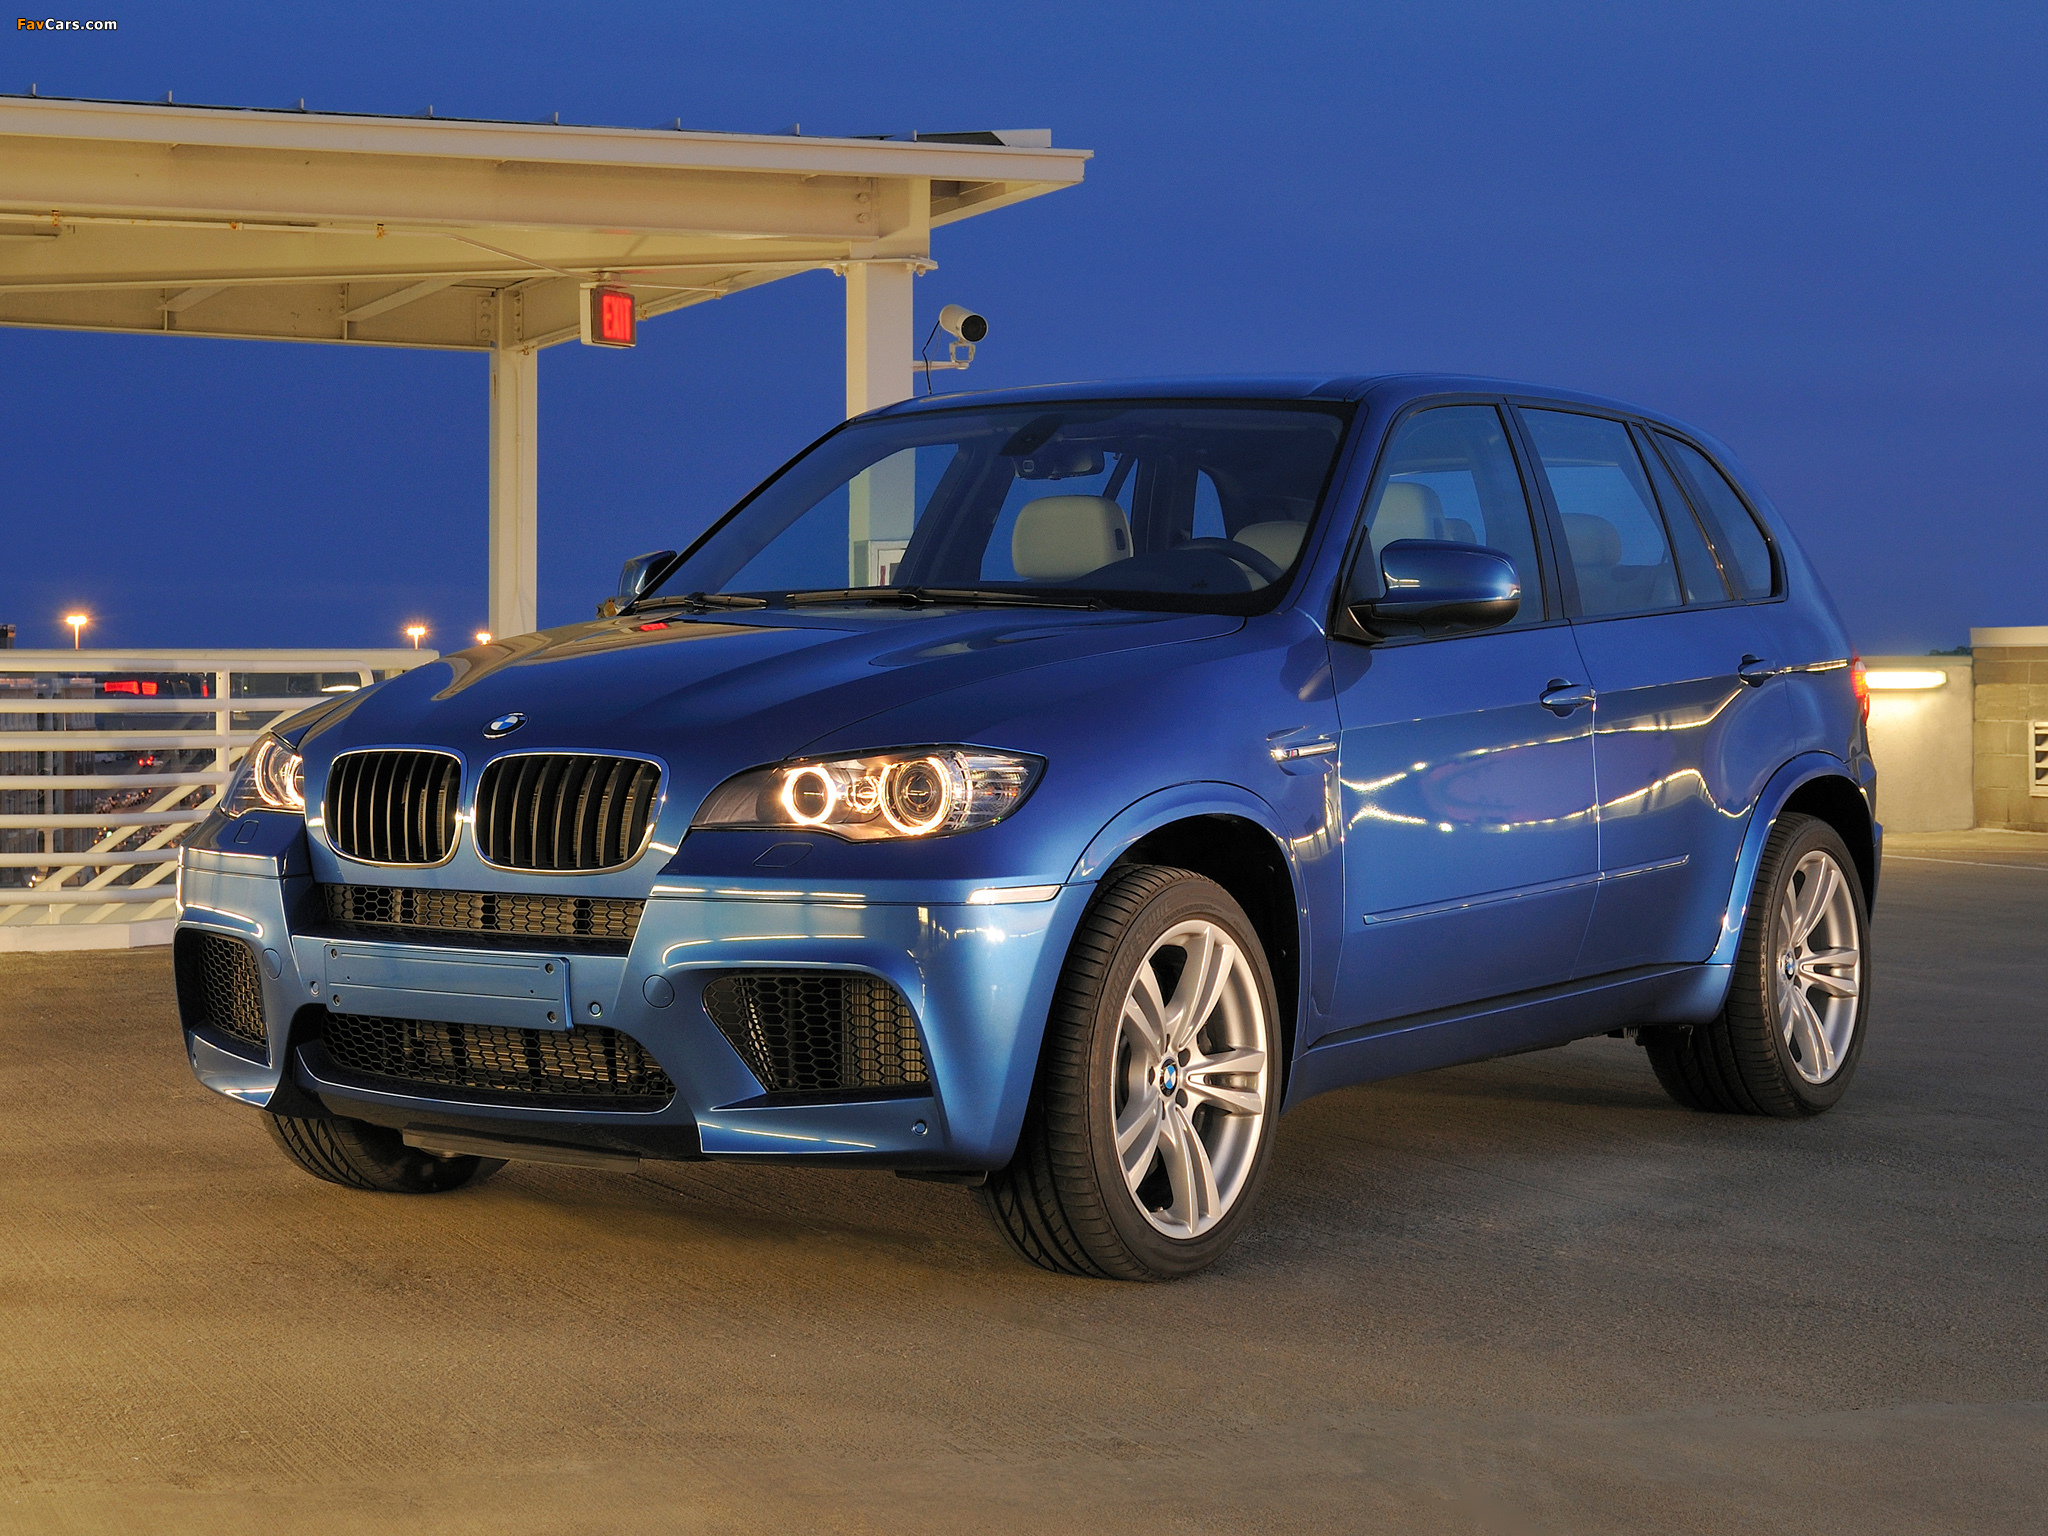 Bmw x5 70. BMW x5 e70 2013. BMW x5m 2010. BMW x5m 2009. BMW x5m e70 Blue.